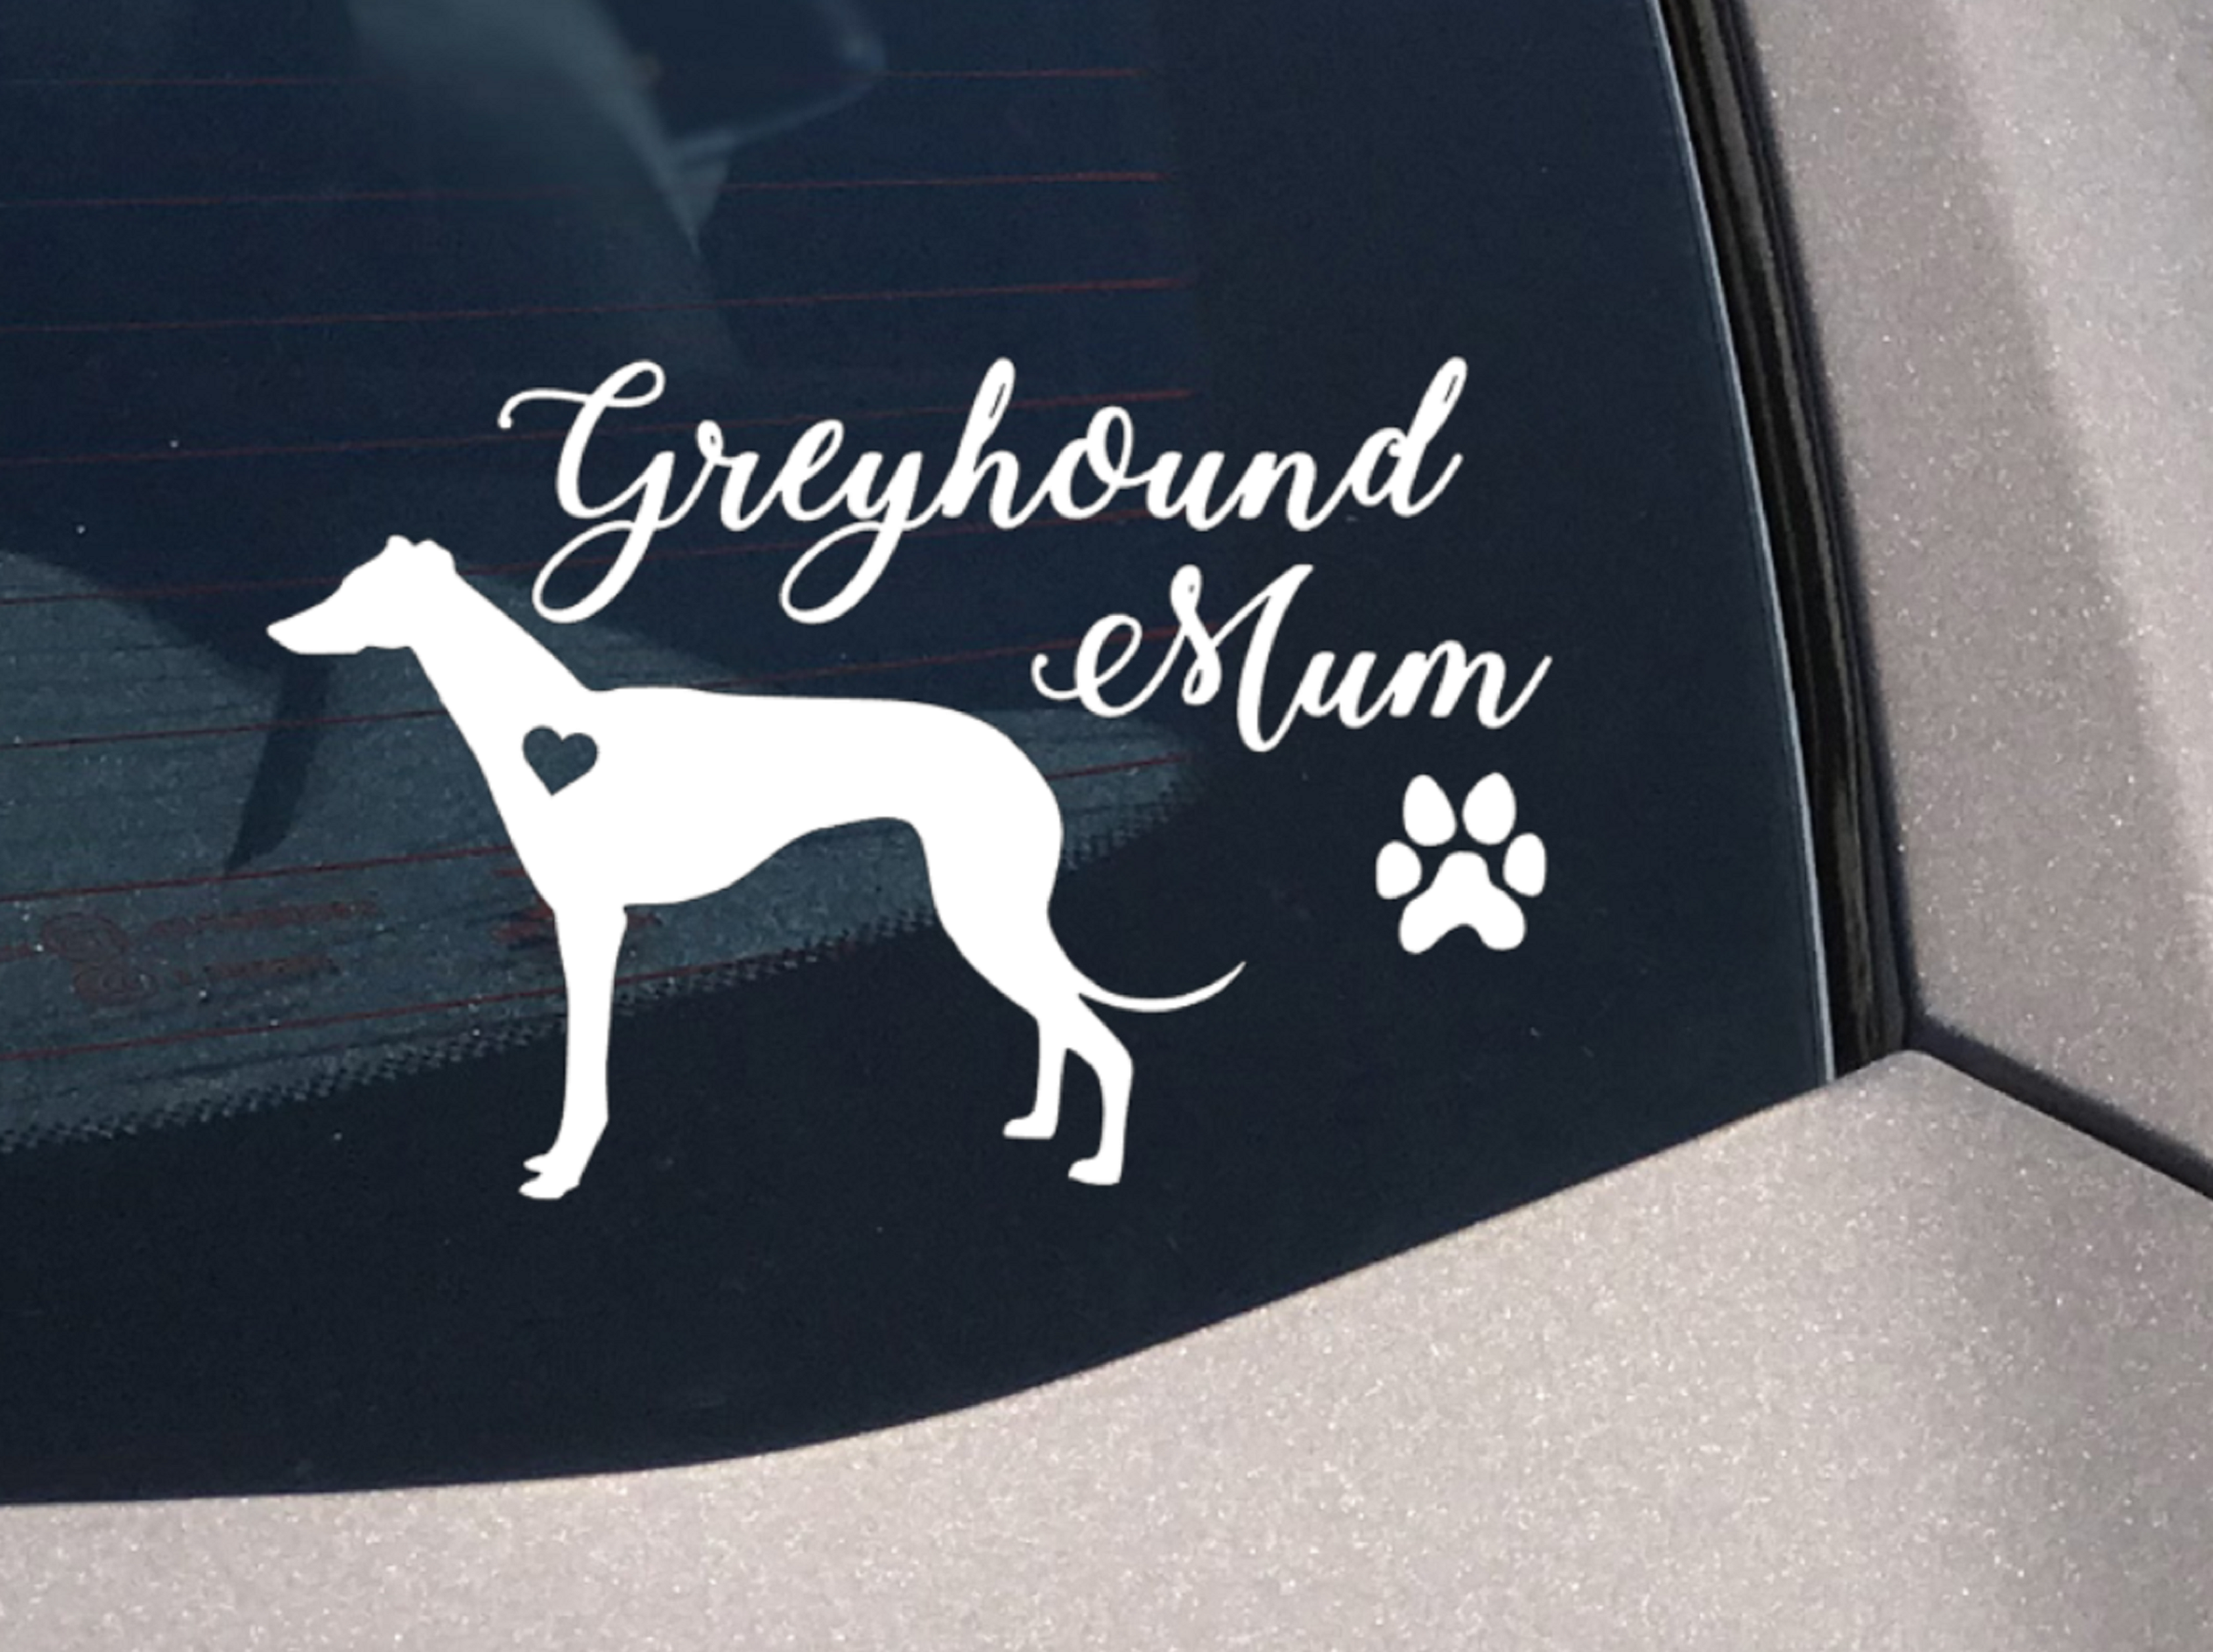 Greyhound Mum Decal - My Crafty Dog